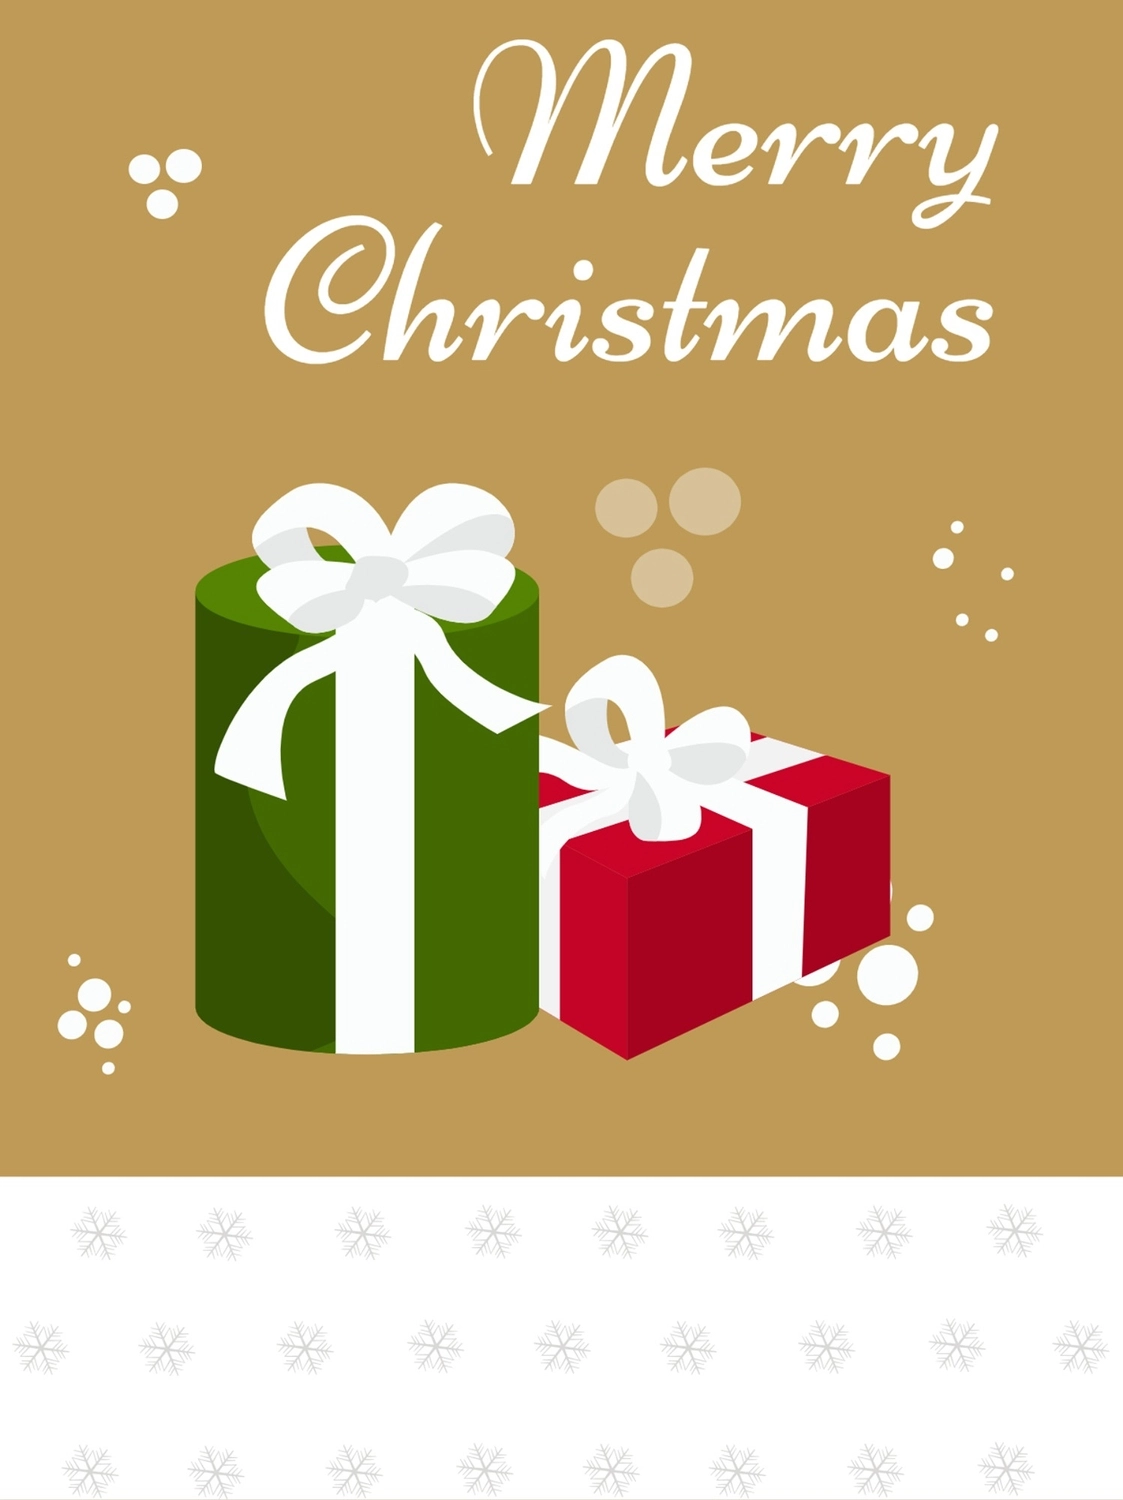 リボンのかかったクリスマスプレゼント, グリーティングカード, グリーティング, ハガキ, グリーティングカードテンプレート